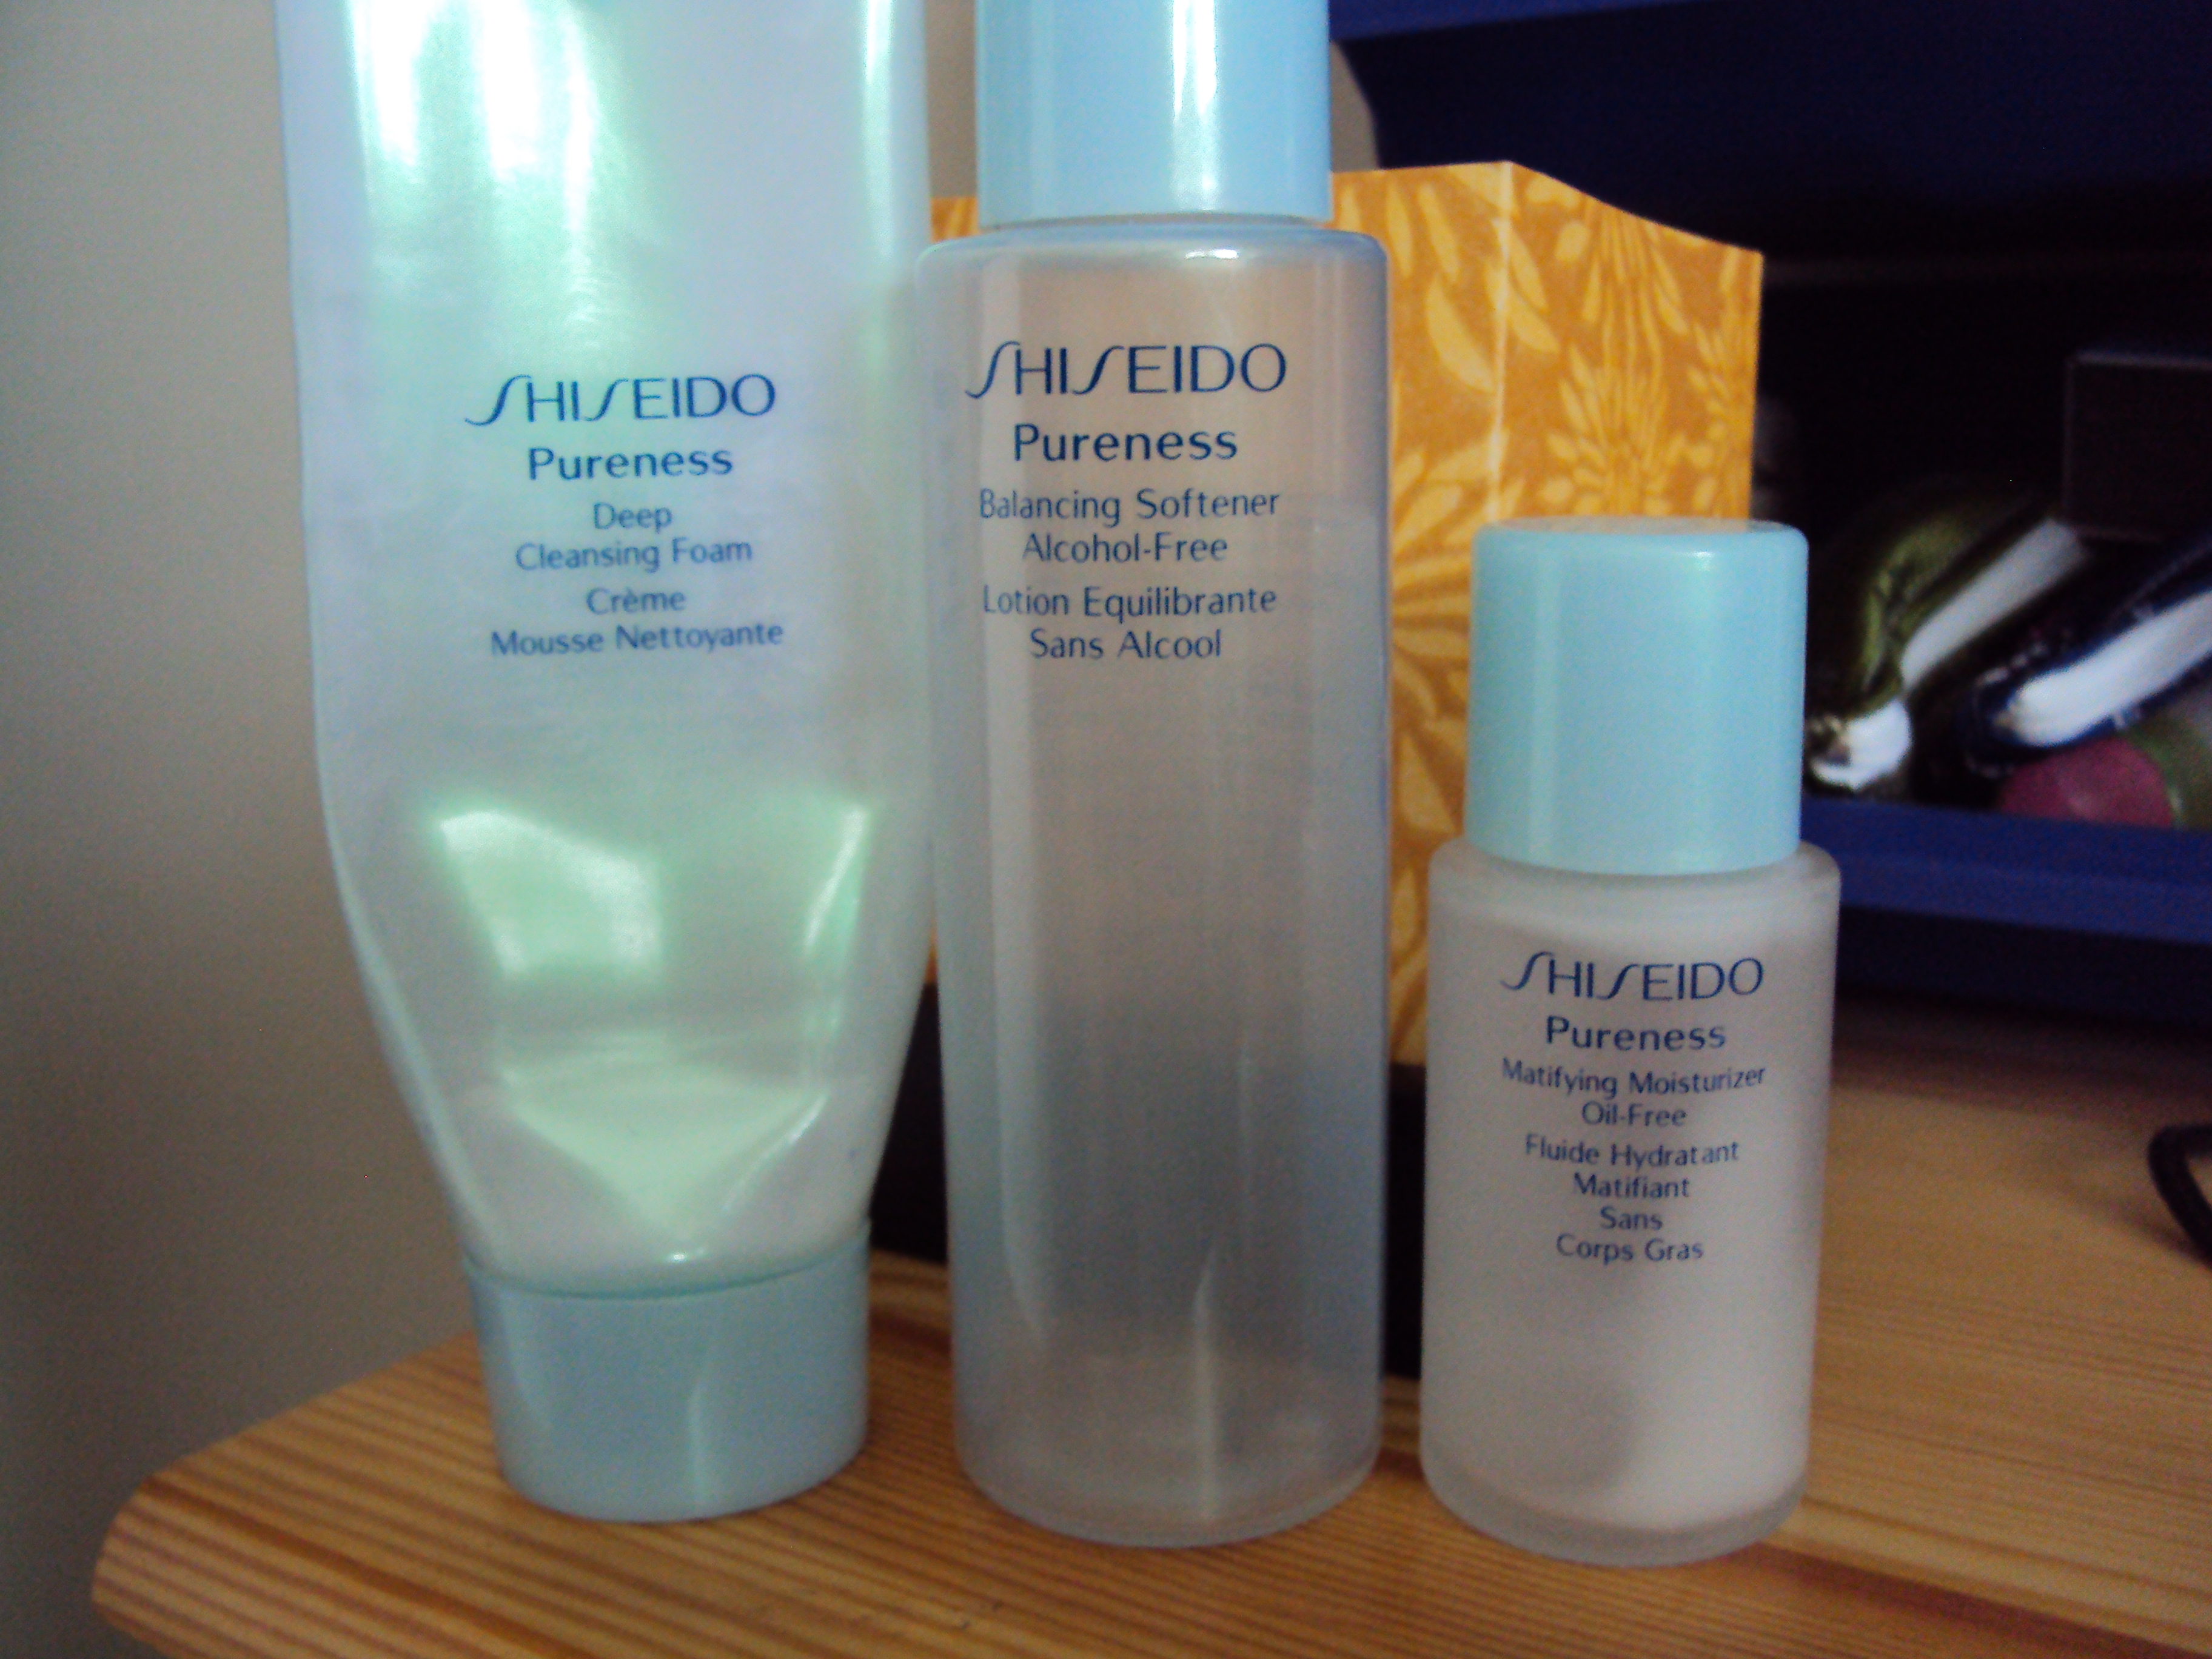 shiseido skincare for acne review